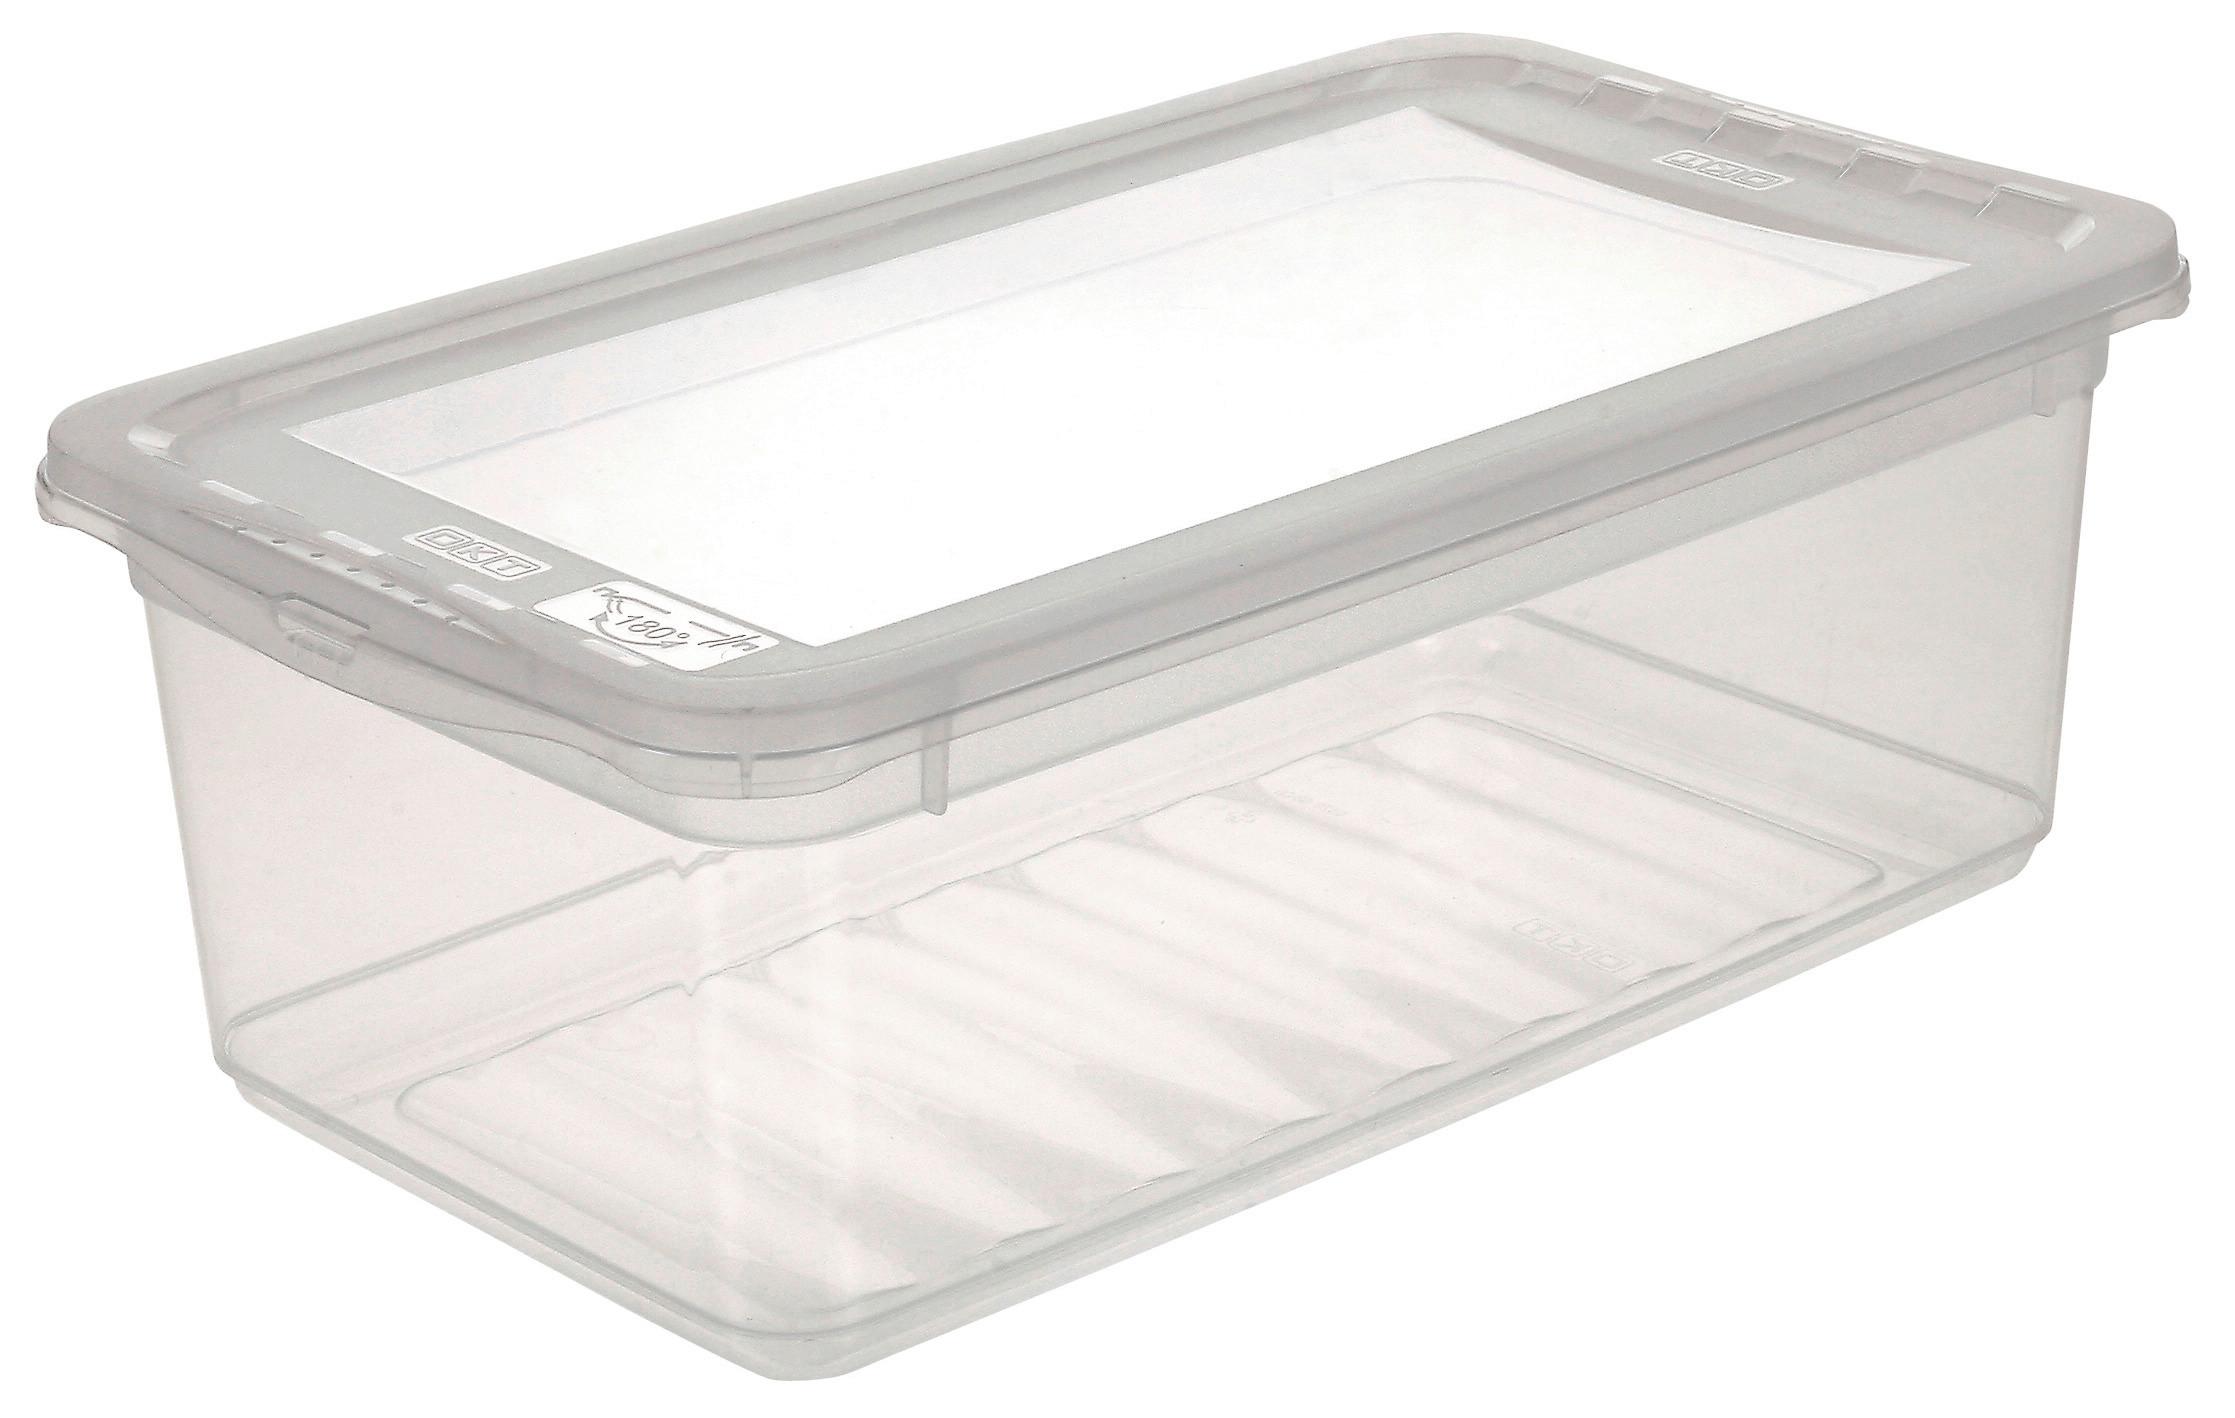 Aufbewahrungsbox Bea mit Deckel Kunststoff 33x19,5x12 cm - Transparent, KONVENTIONELL, Kunststoff (33/19,5/12cm) - Homezone